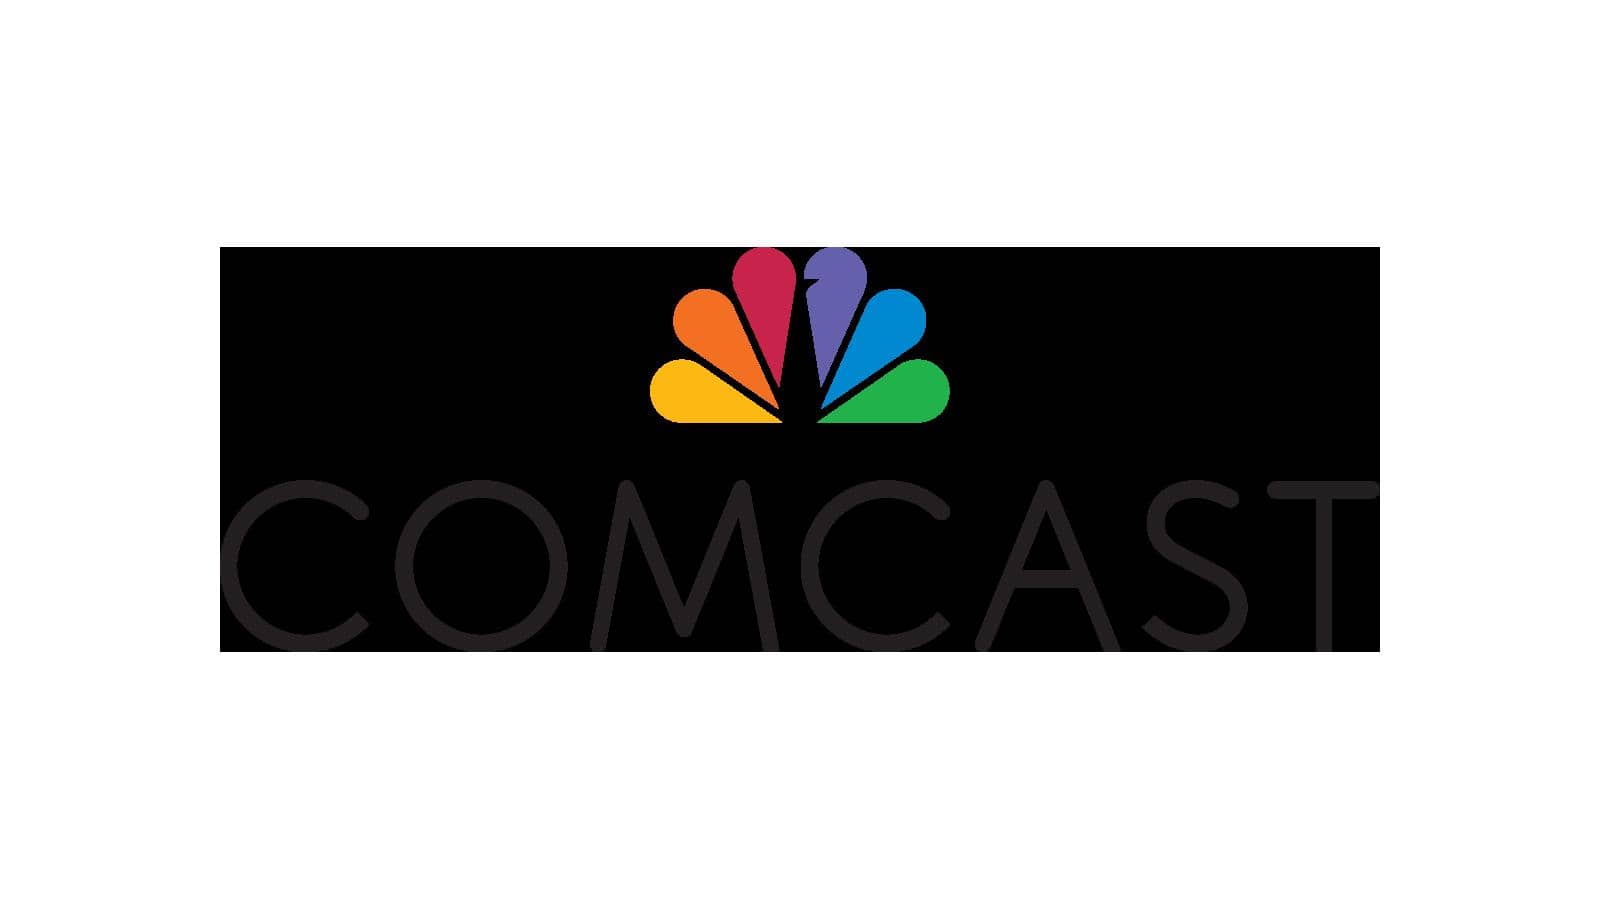 Comcast сократила годовую прибыль на 19,3%